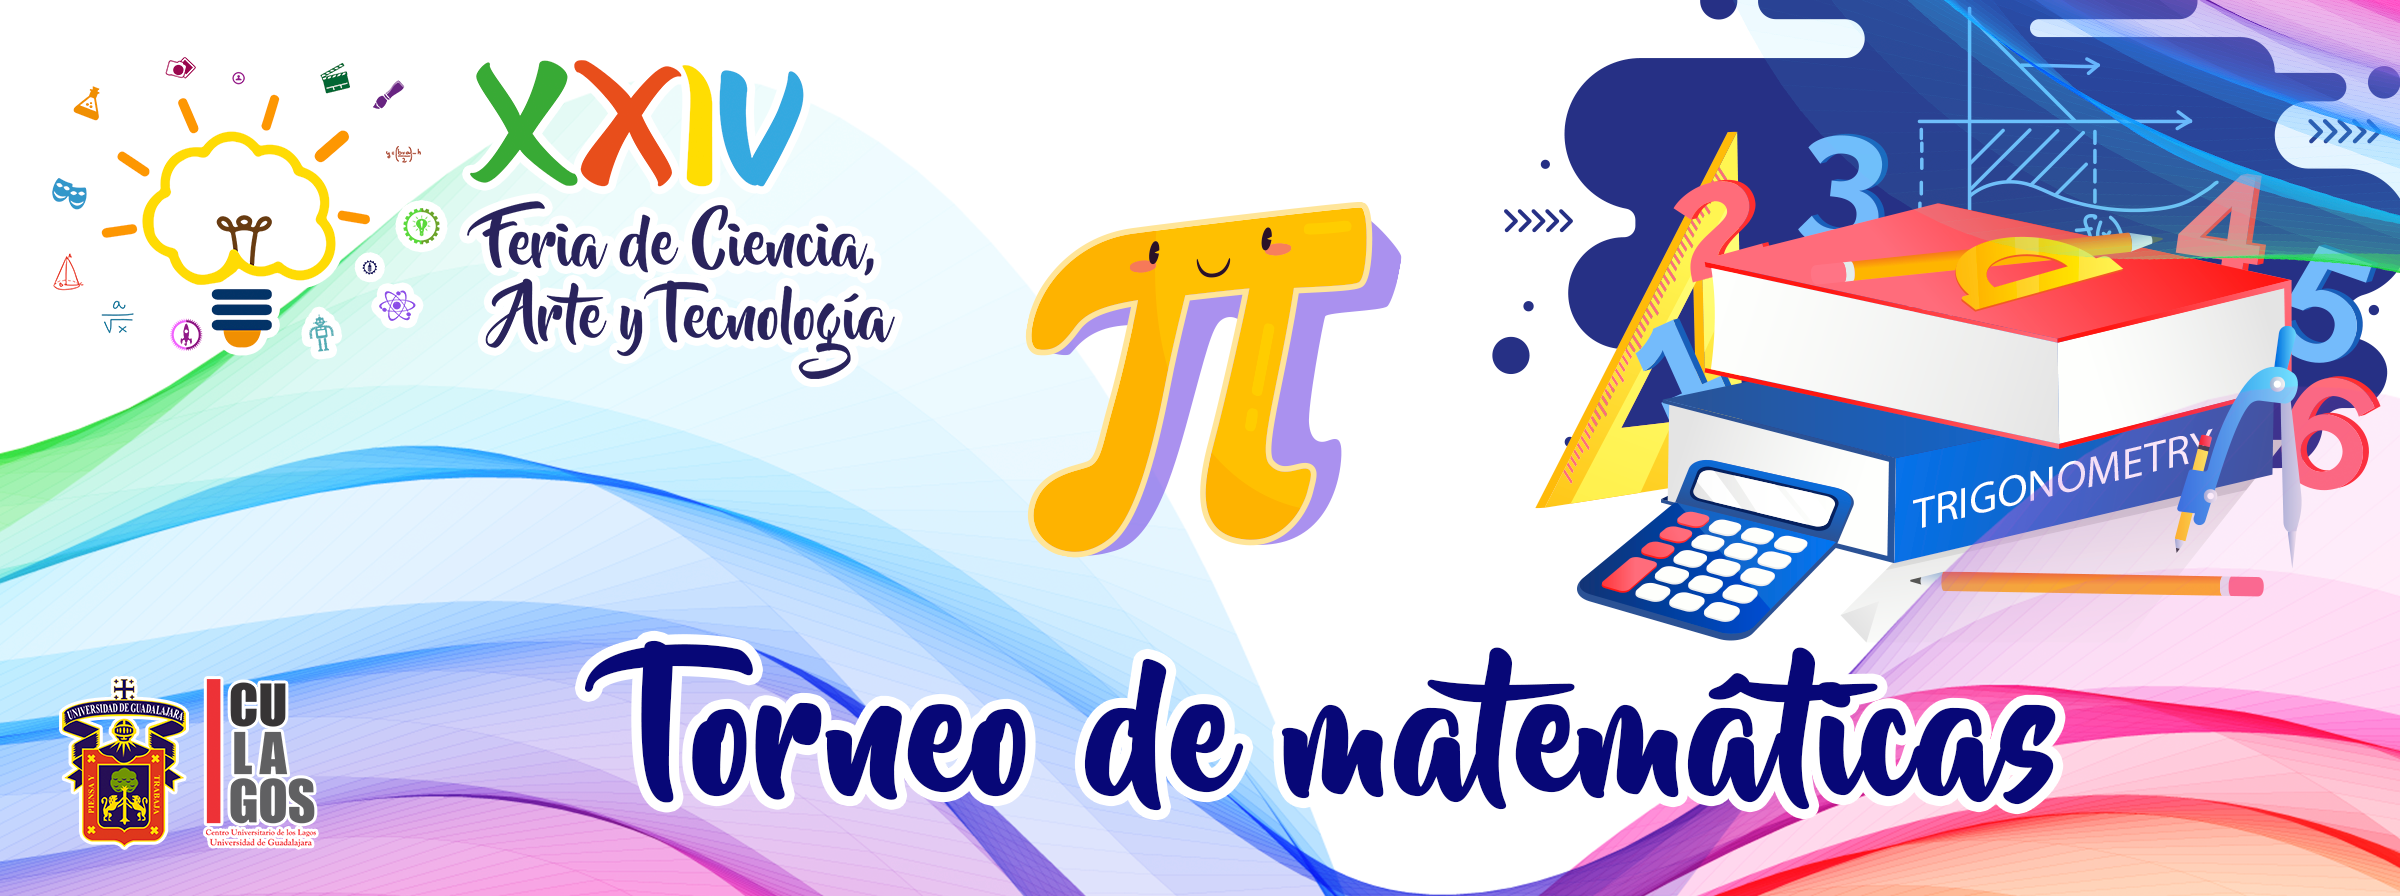 Banner - Torneo de matemáticas